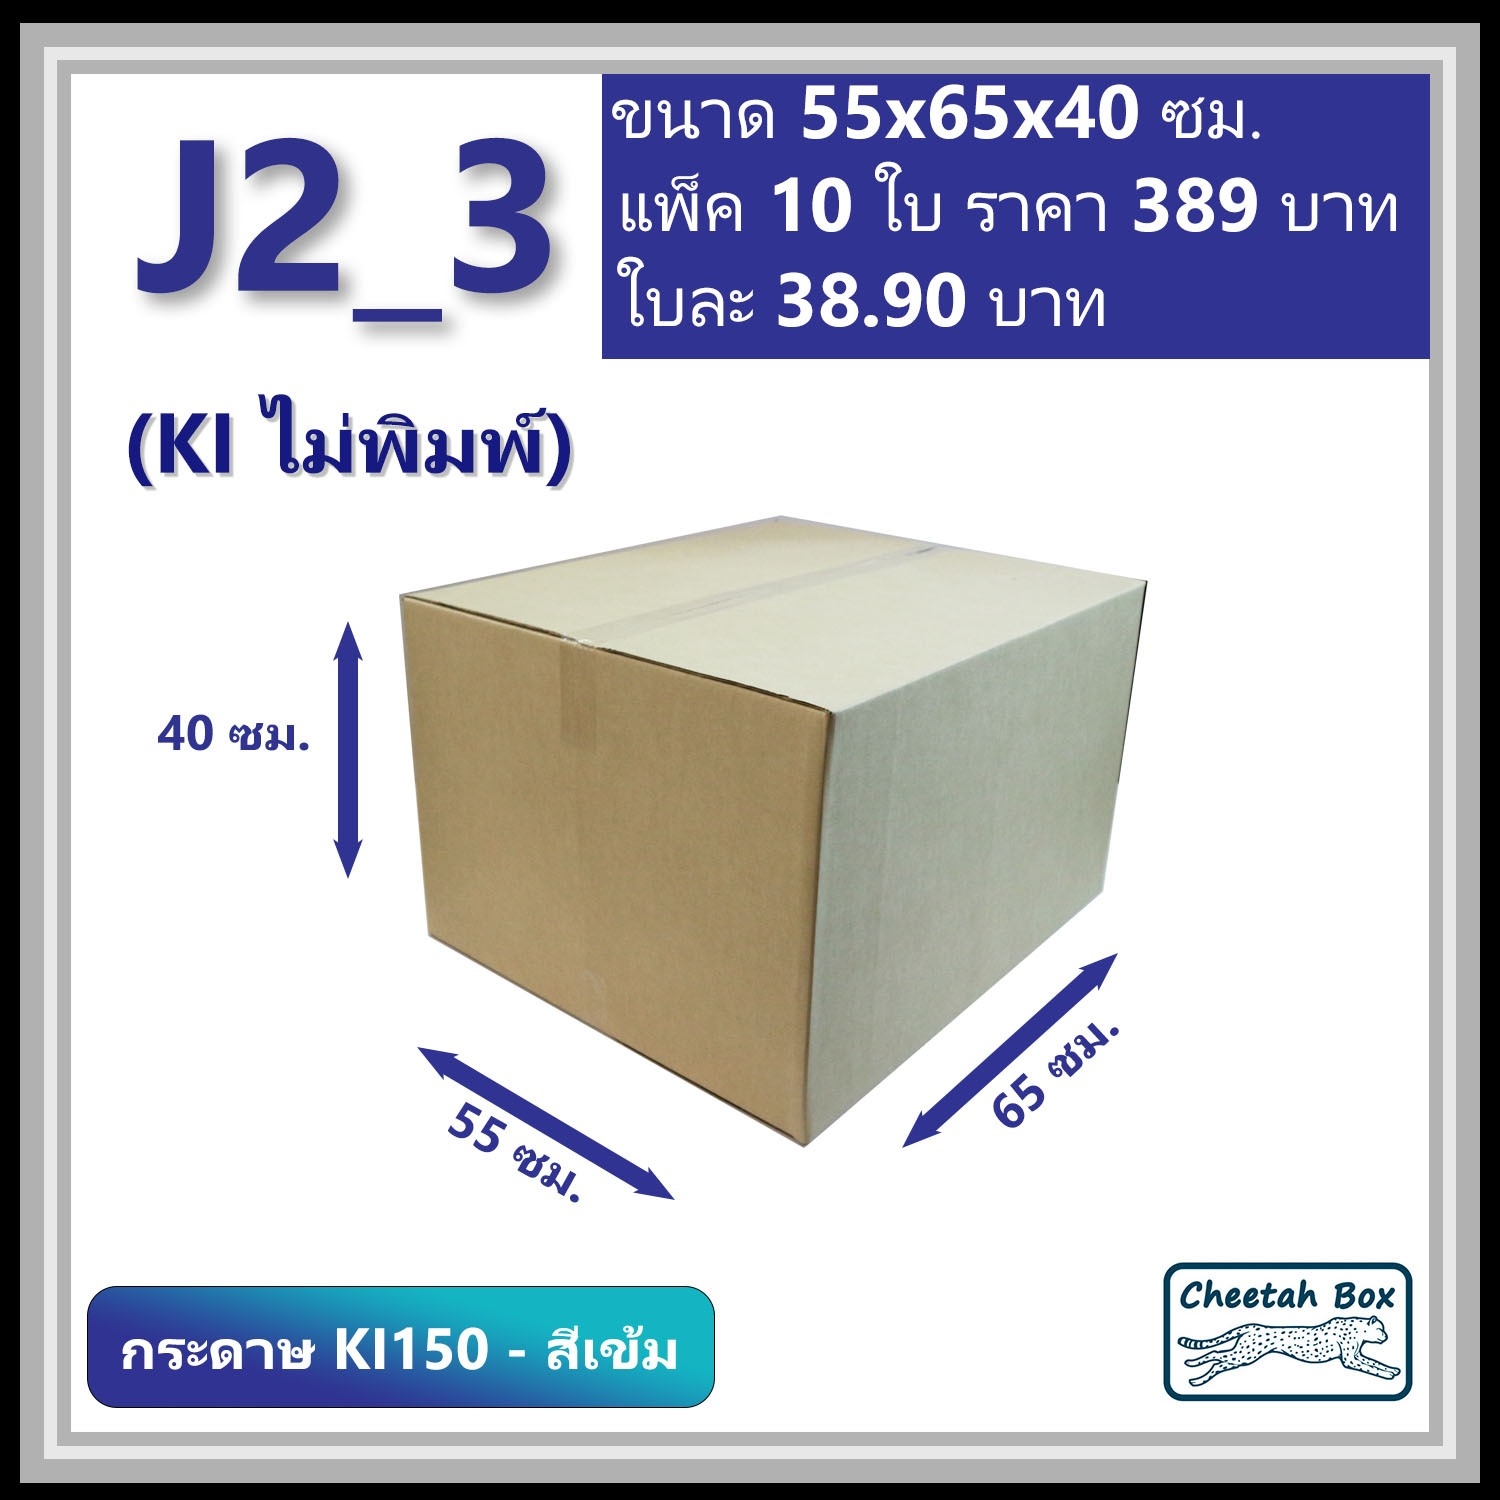 กล่องพัสดุขนาดใหญ่ J2 (KI150-สีเข้ม) ลูกฟูก 3 ชั้น (Cheetah Box ขนาด 55*65*40 CM.)